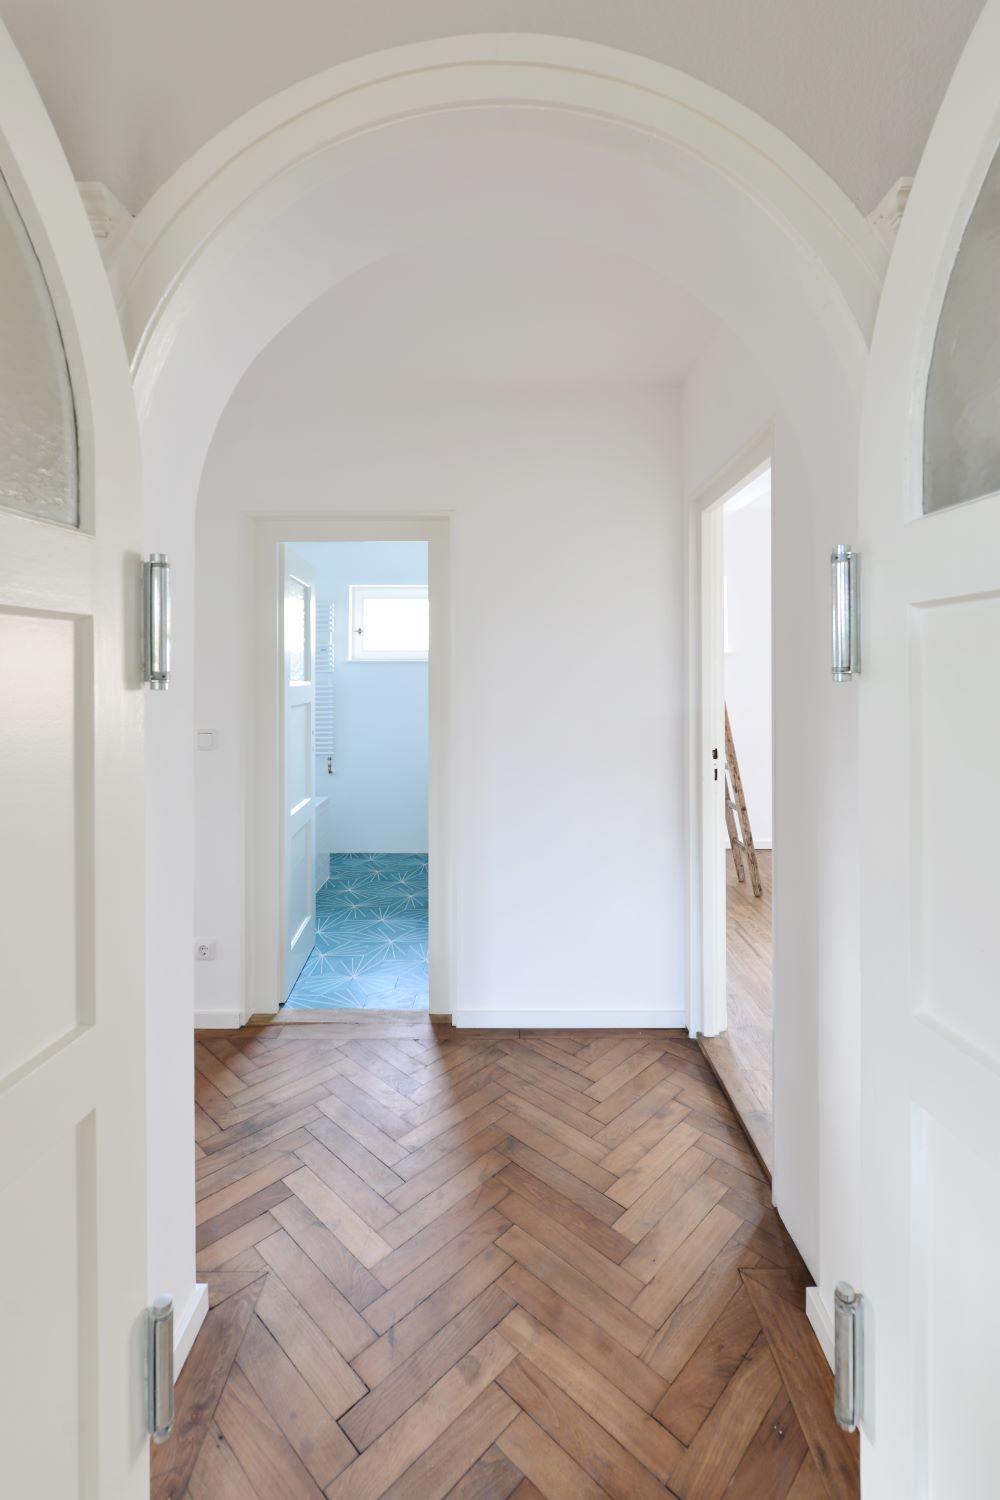 stairs, cabinet, light, window, hoyerweg, hallway, interior, herringbone parquet, round arch